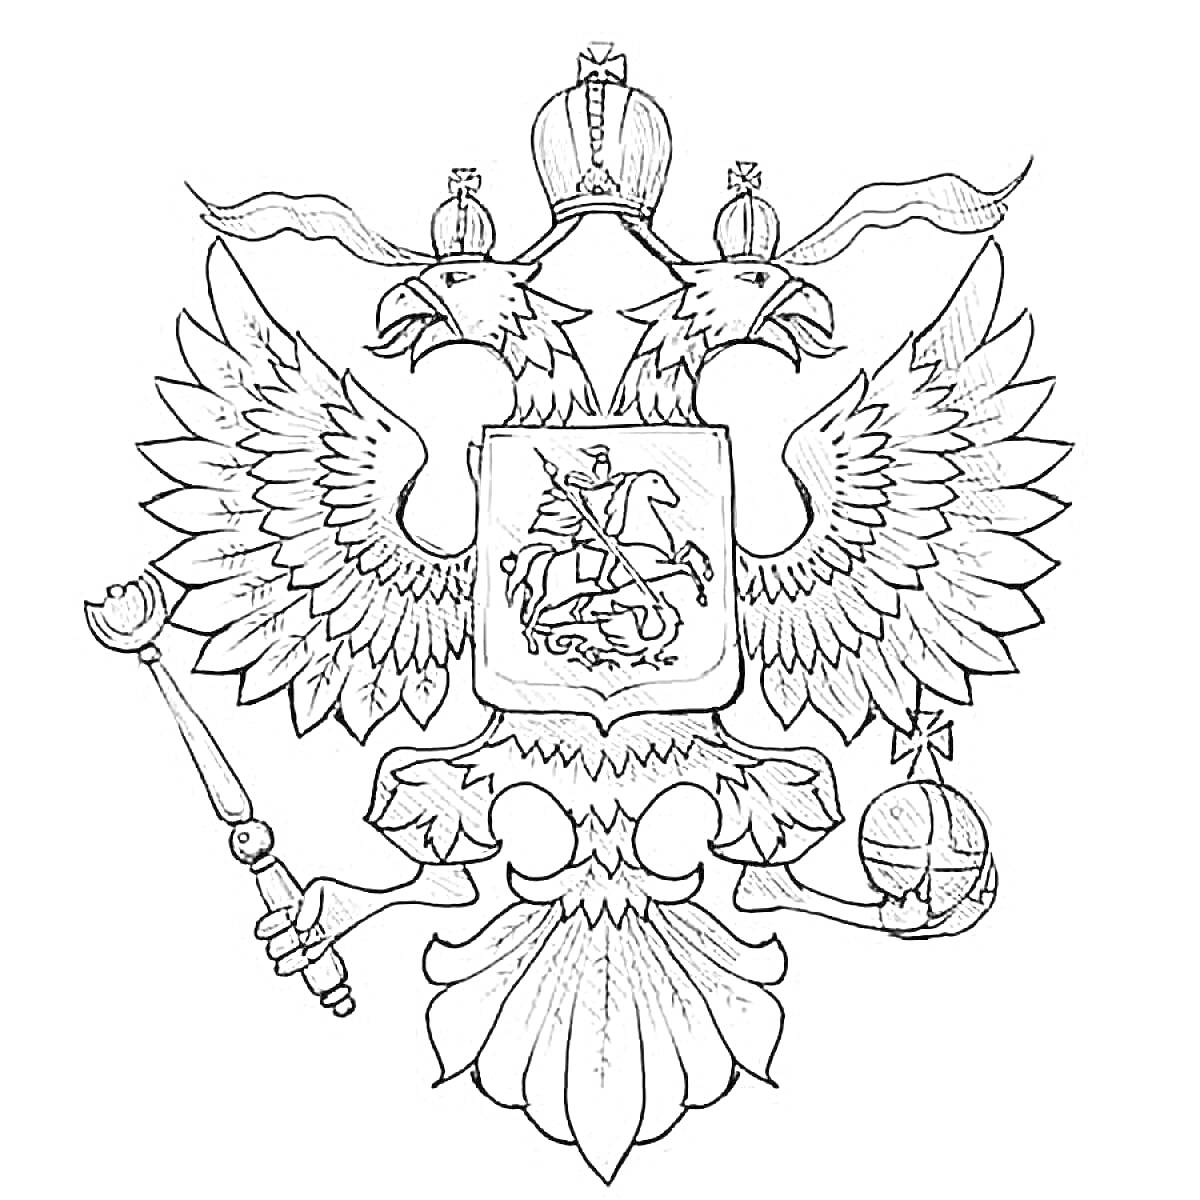 Герб России с изображением двуглавого орла, держащего скипетр и державу, с Щитом Святого Георгия Победоносца